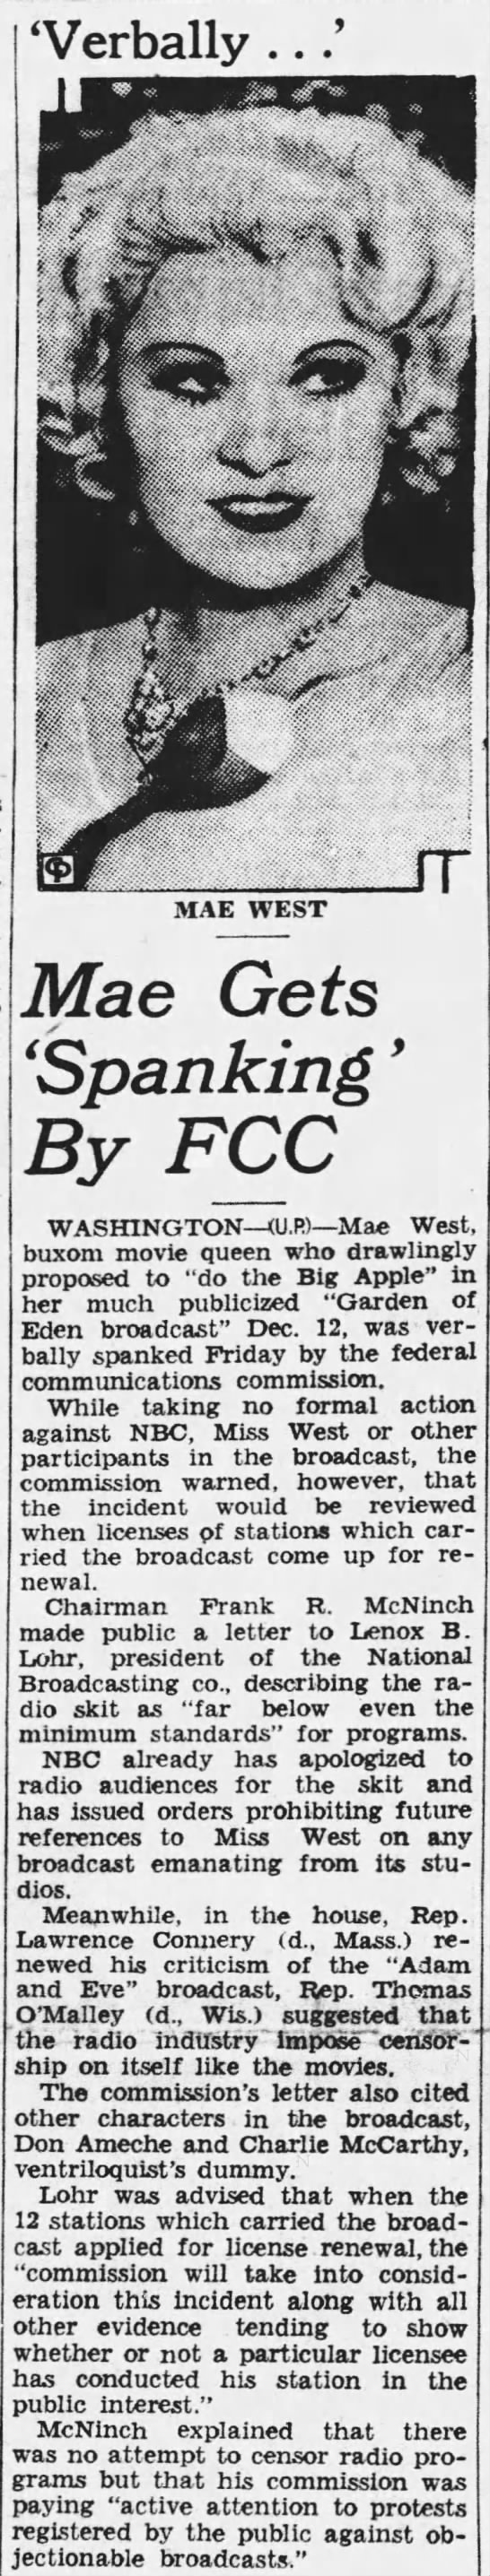 Mae West's 1937 "Big Apple" radio sketch condemned. - 